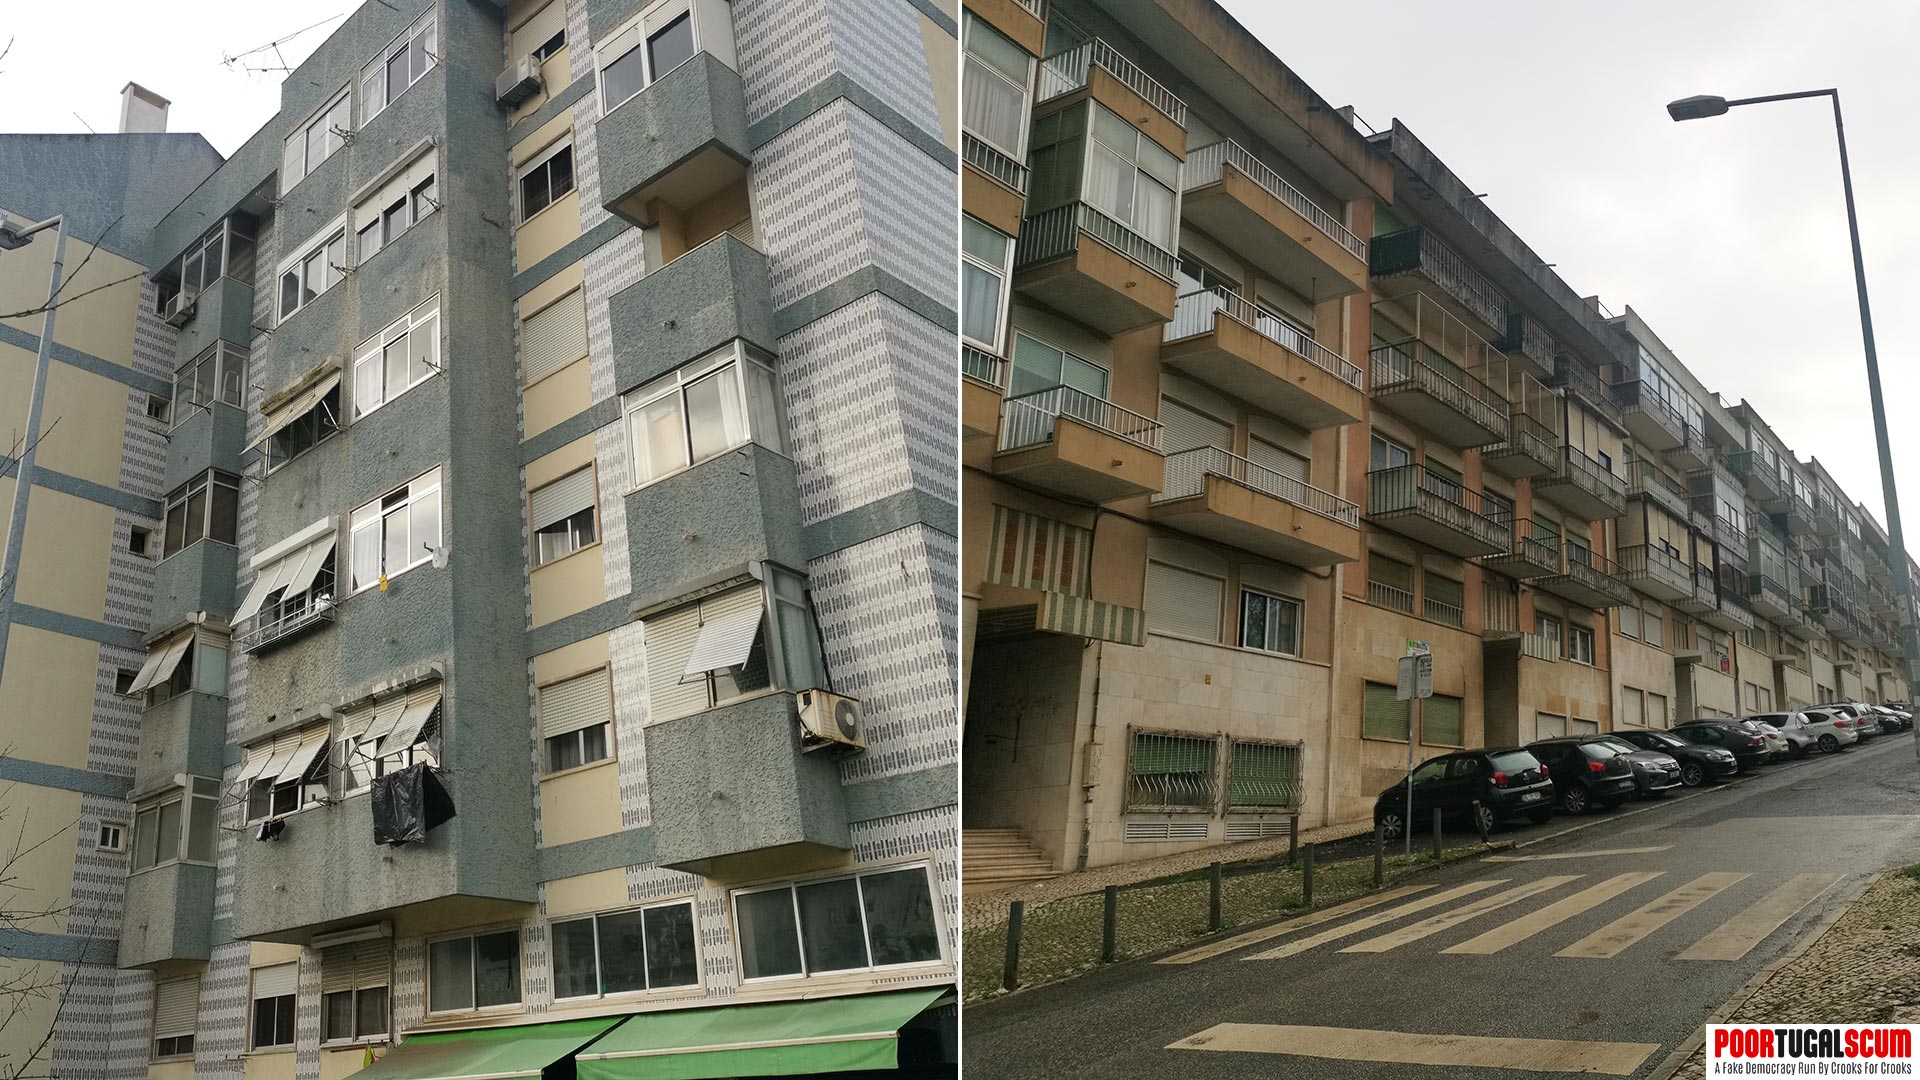 Facades of Portuguese buildings in very poor condition